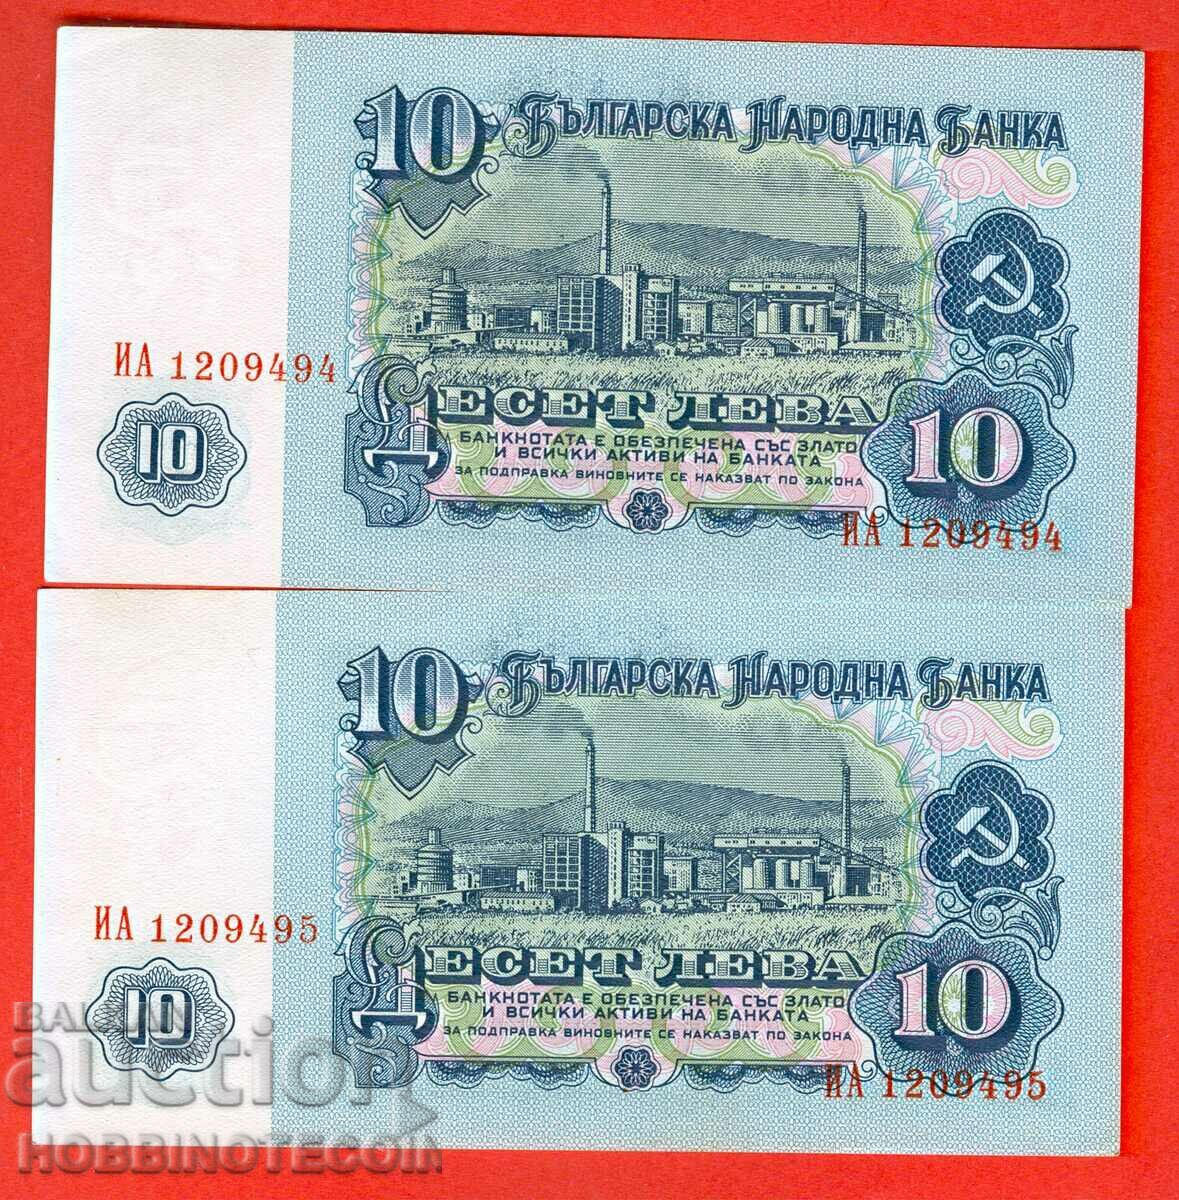 BULGARIA BULGARIA 2 x 10 Leva 7 digits SERIAL NO. IA 1974 UNC